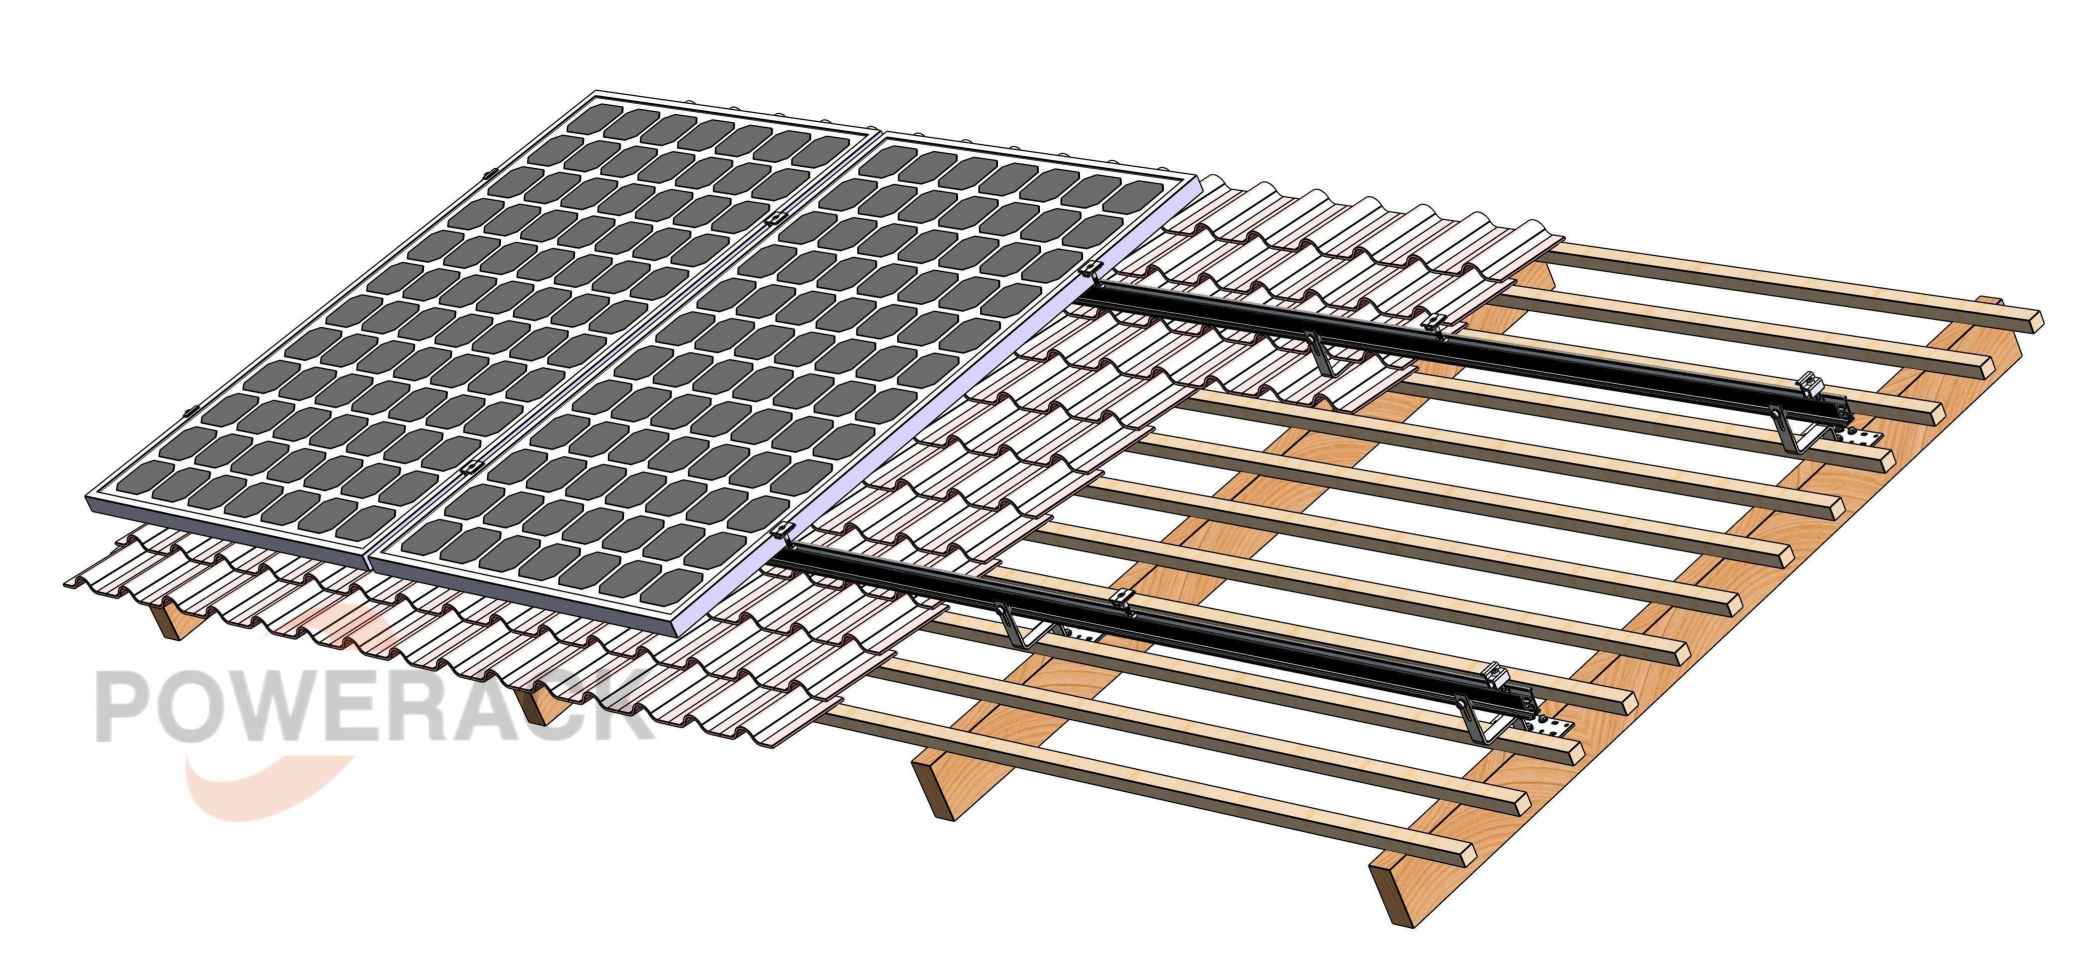 Les kits de montage solaire --- toit en tuiles